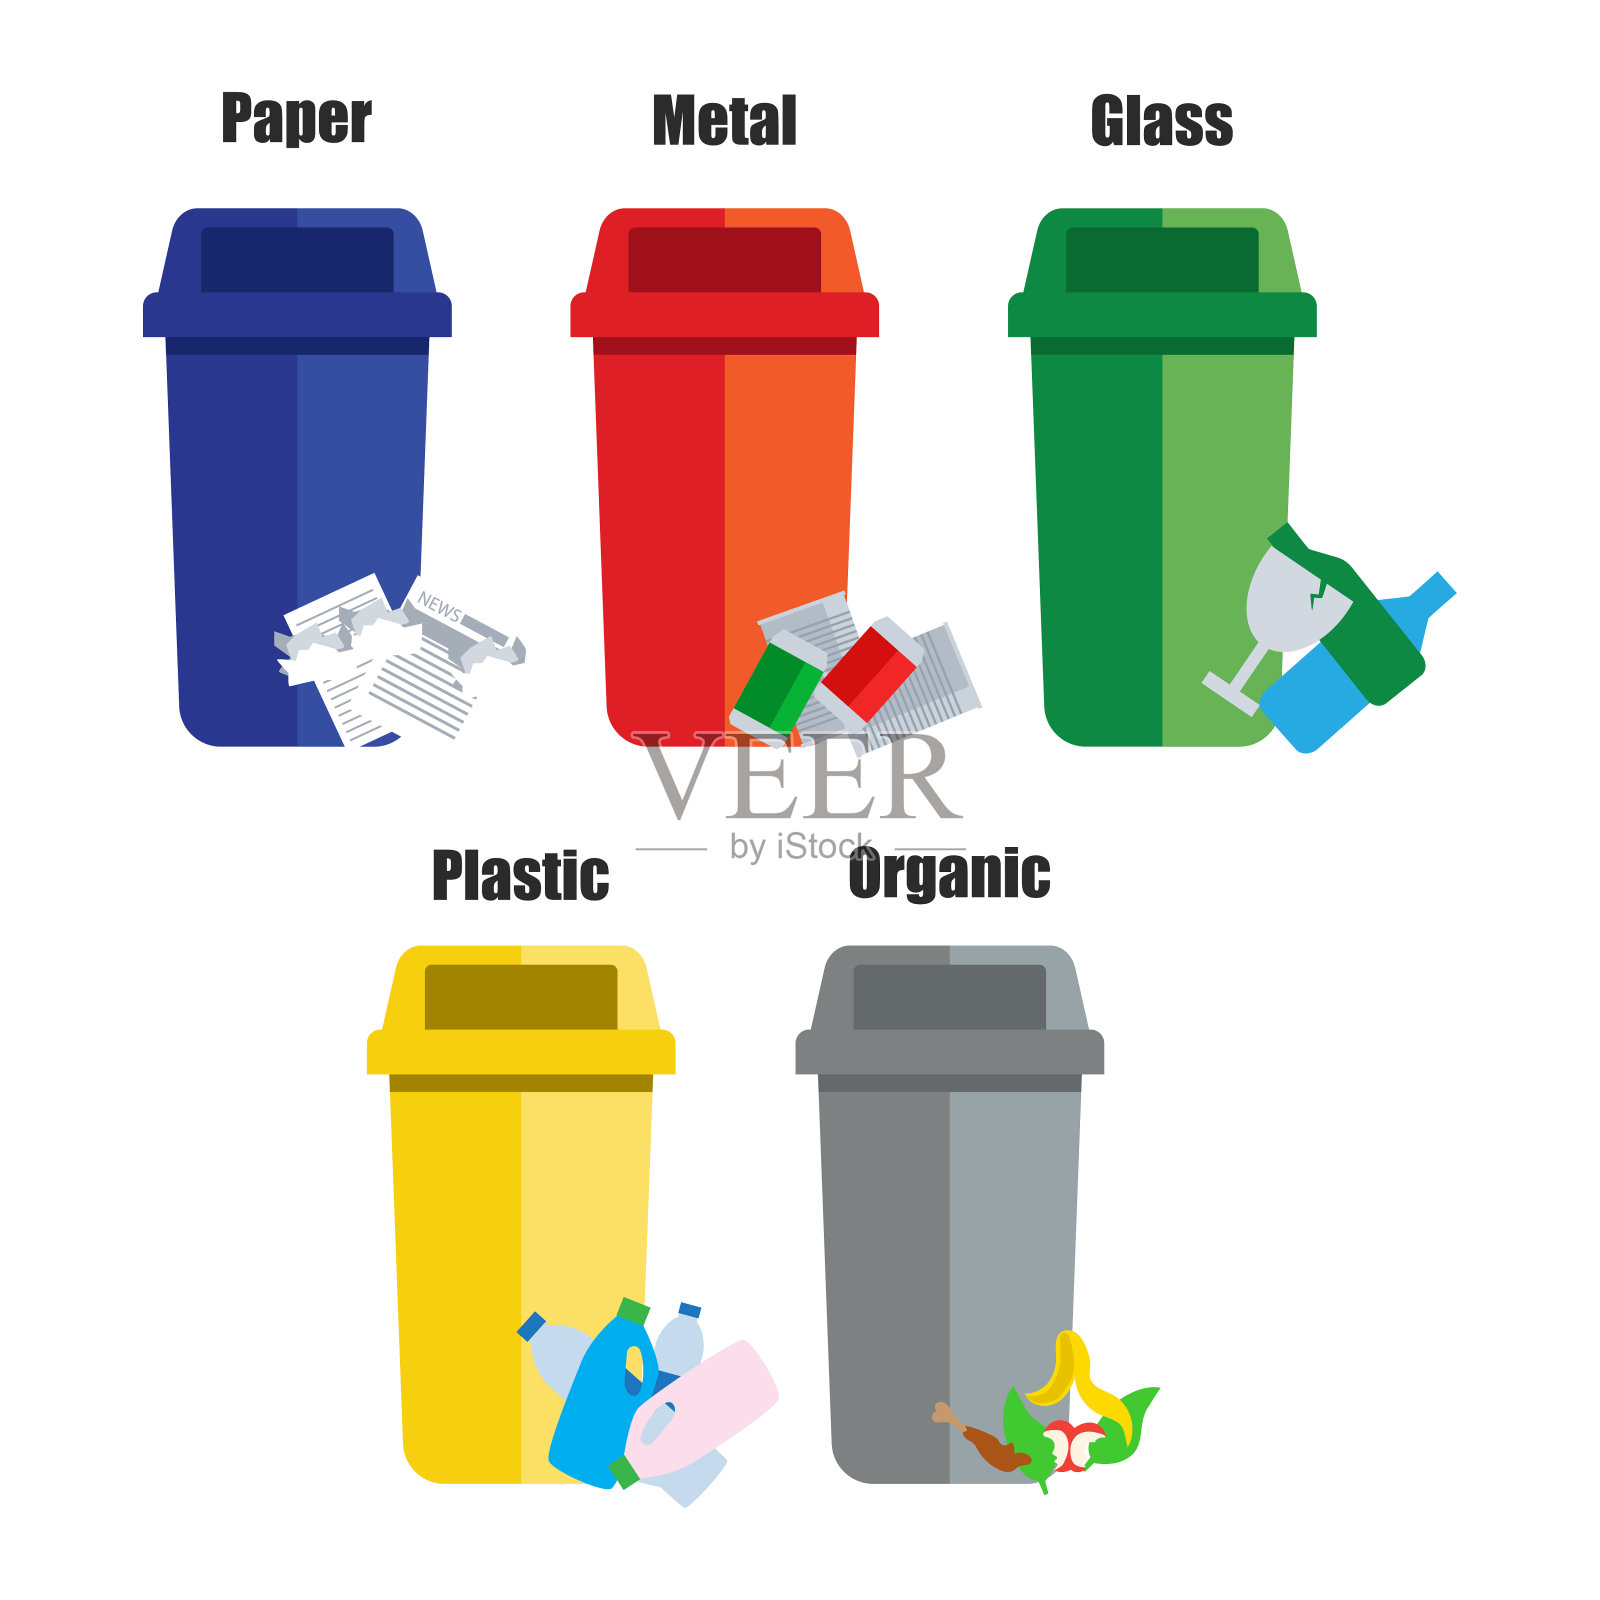 彩色垃圾桶蓝、红、绿、黄，与金属、纸张、塑料、玻璃和有机废物适合重用减少循环利用。垃圾分类垃圾设计元素图片